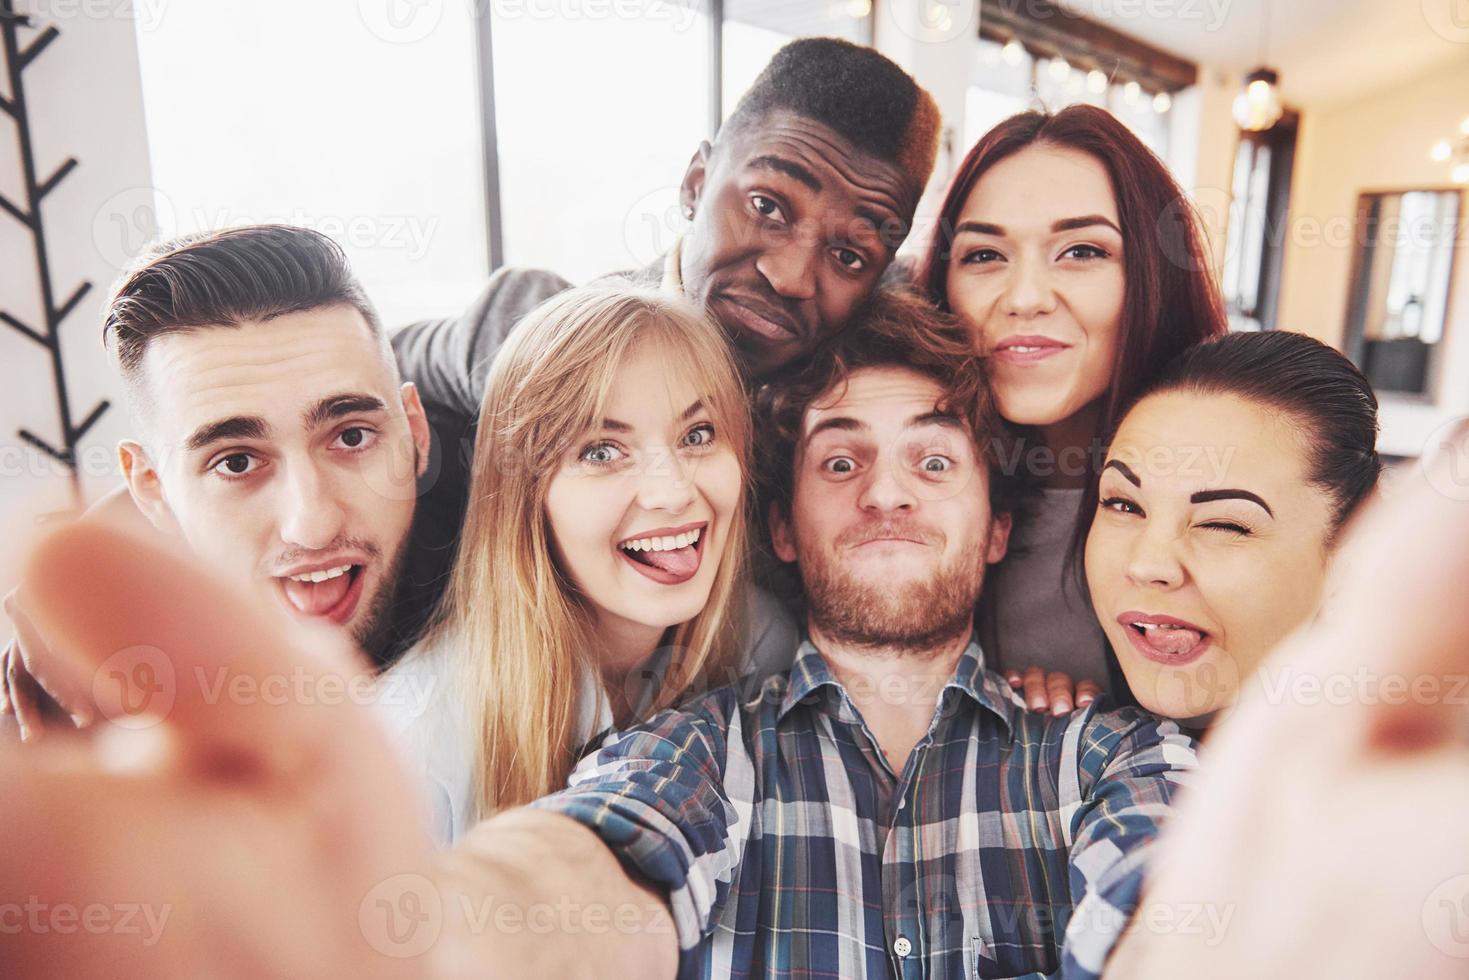 selfie de jovens adolescentes sorridentes se divertindo juntos. melhores amigos tirando selfie ao ar livre com luz de fundo. conceito de amizade feliz com jovens se divertindo juntos foto